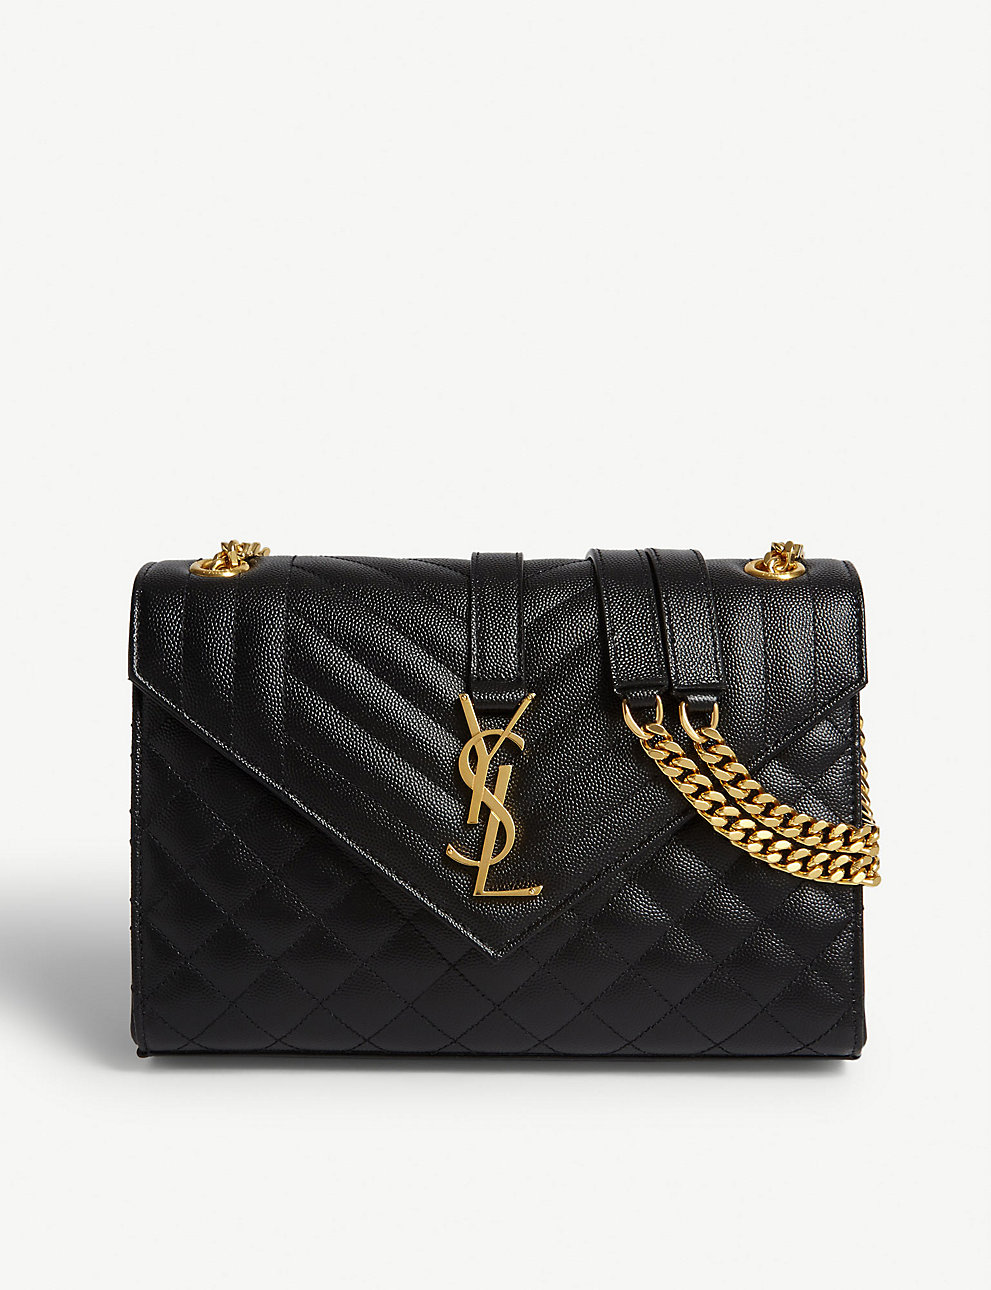 Ocupar plato Acostumbrados a saint laurent bolso satchel de cuero acolchado monograma negro oro – Tienda  de bolsos Yves Saint Laurent de alta calidad